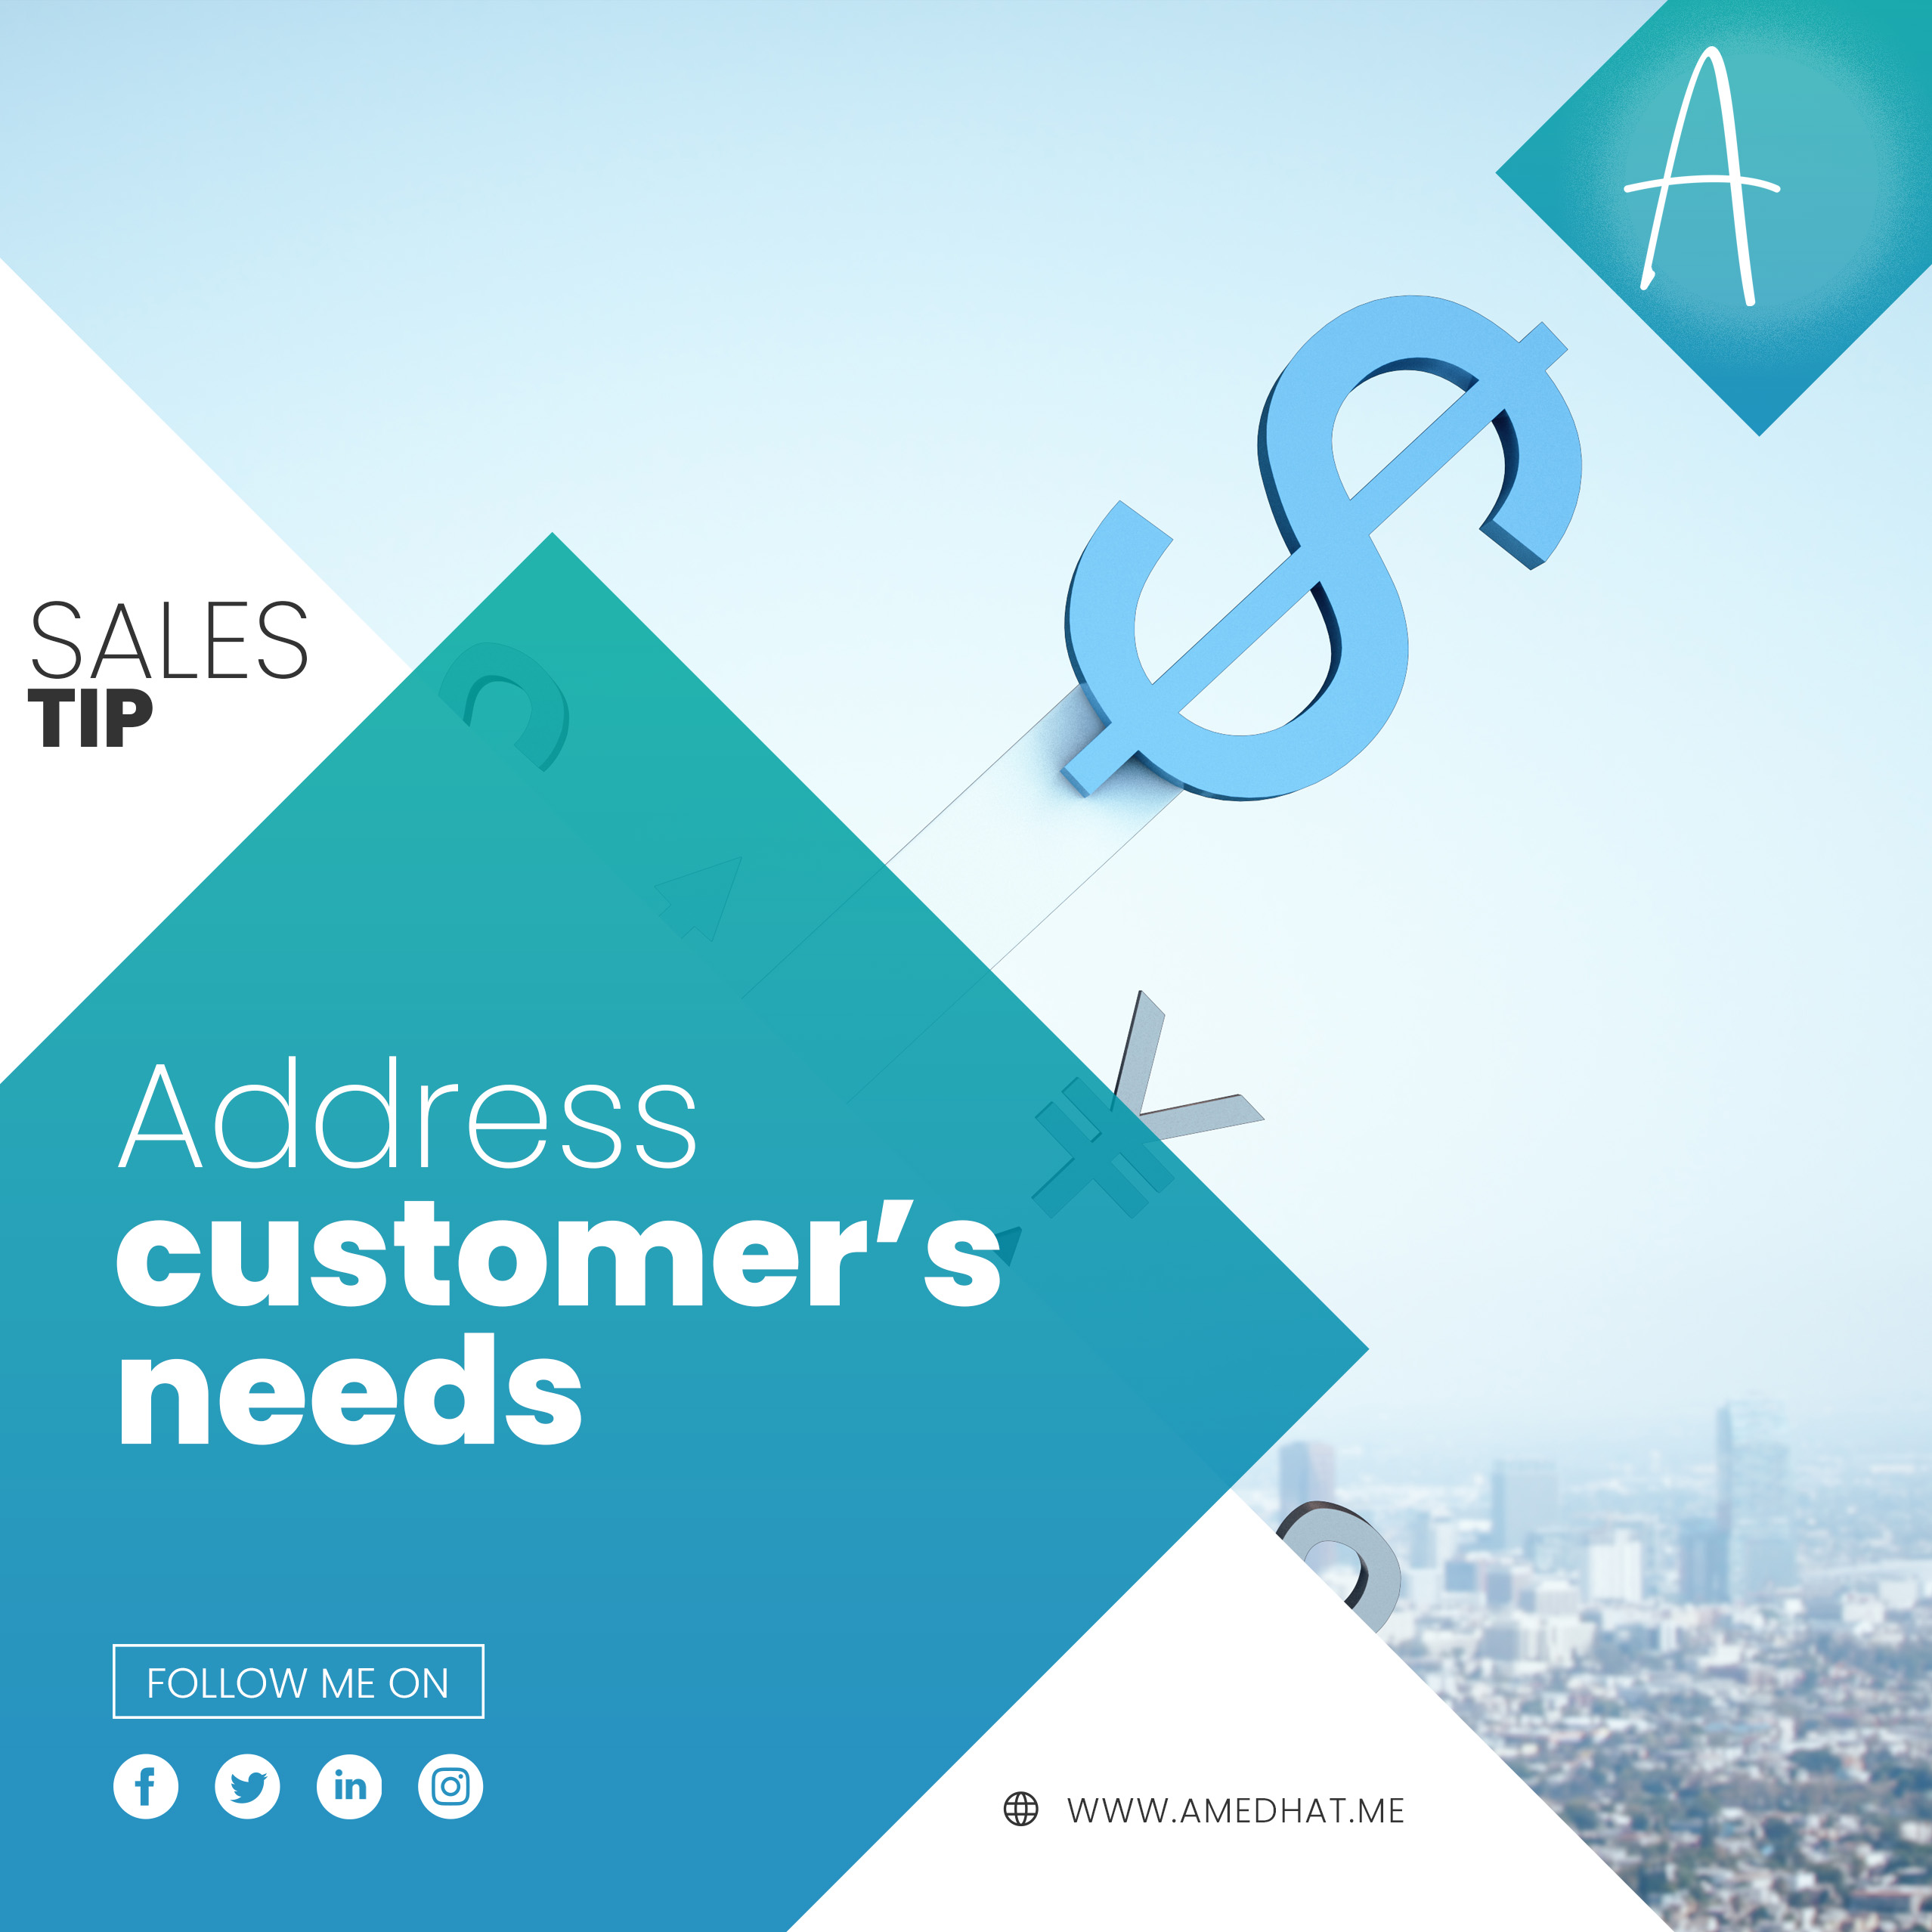 Addressing Customer’s needs